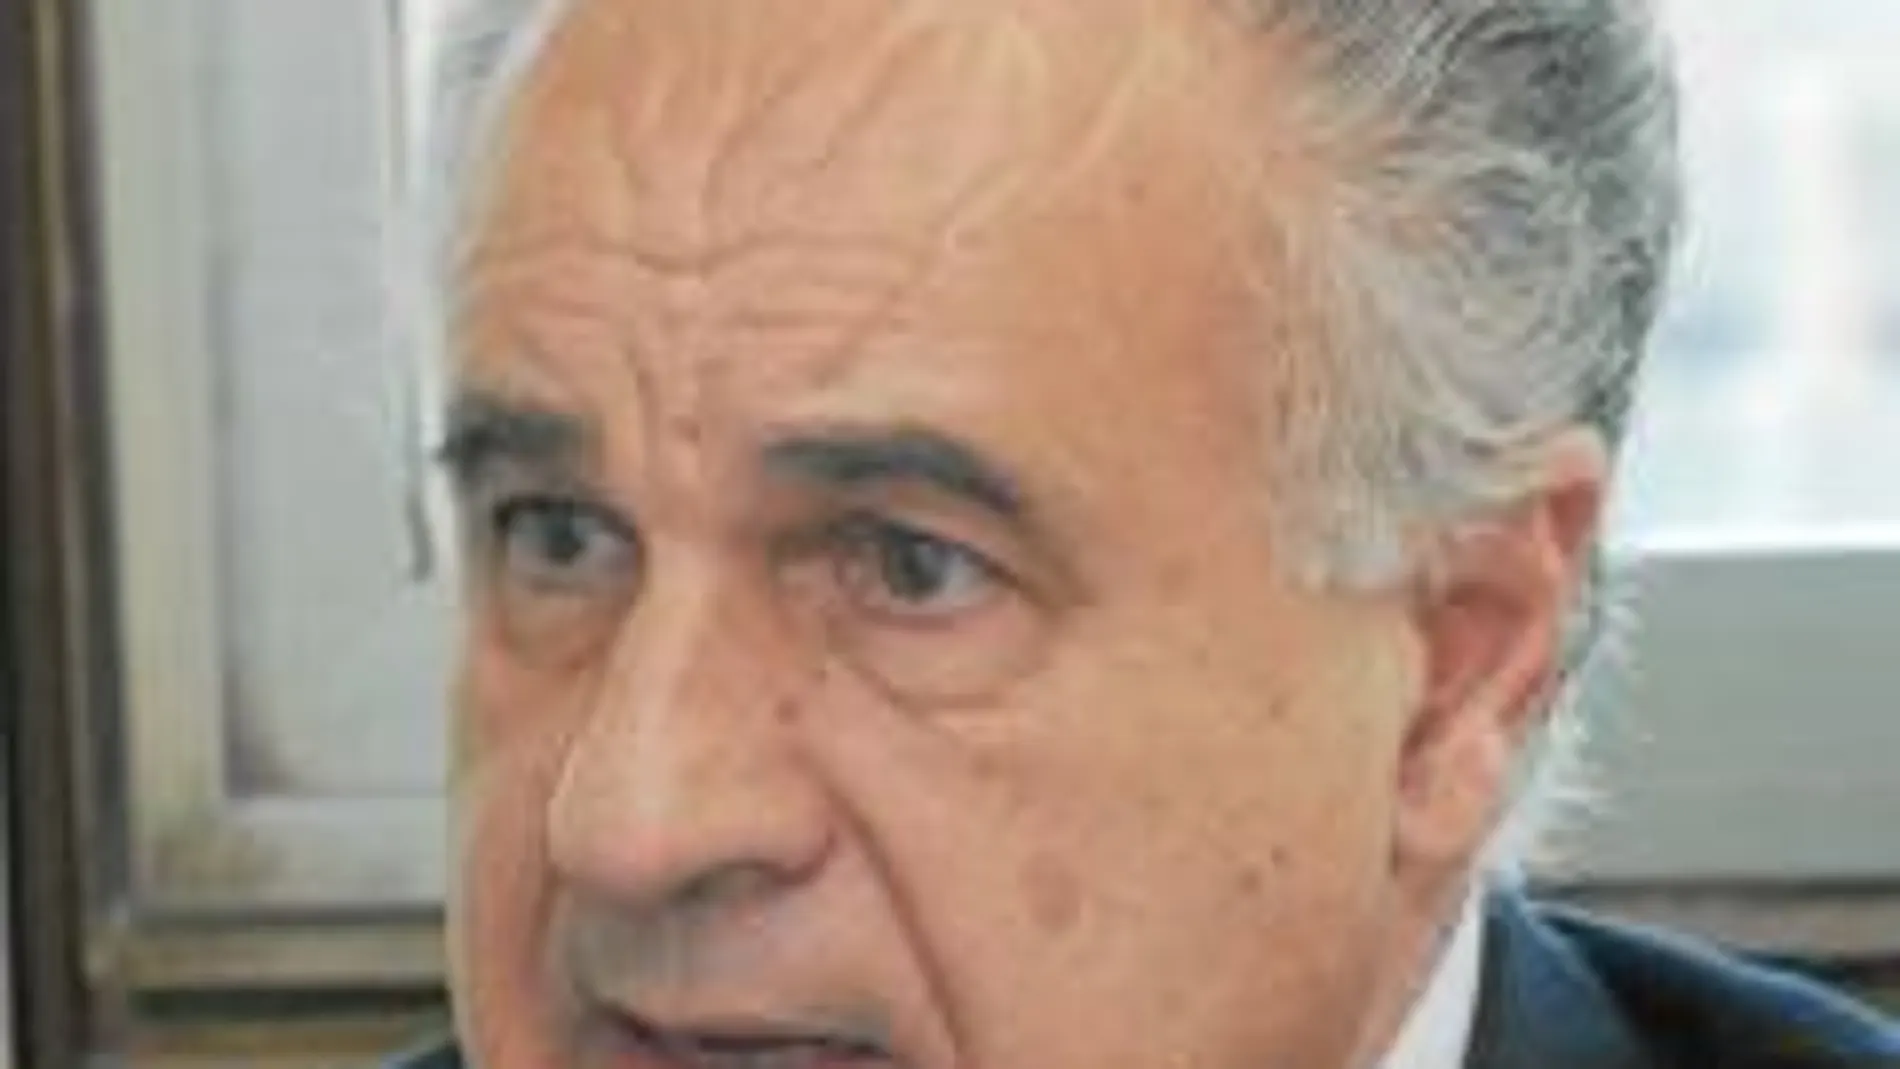 El portavoz del PP en Les Corts y conseller, Rafael Blasco